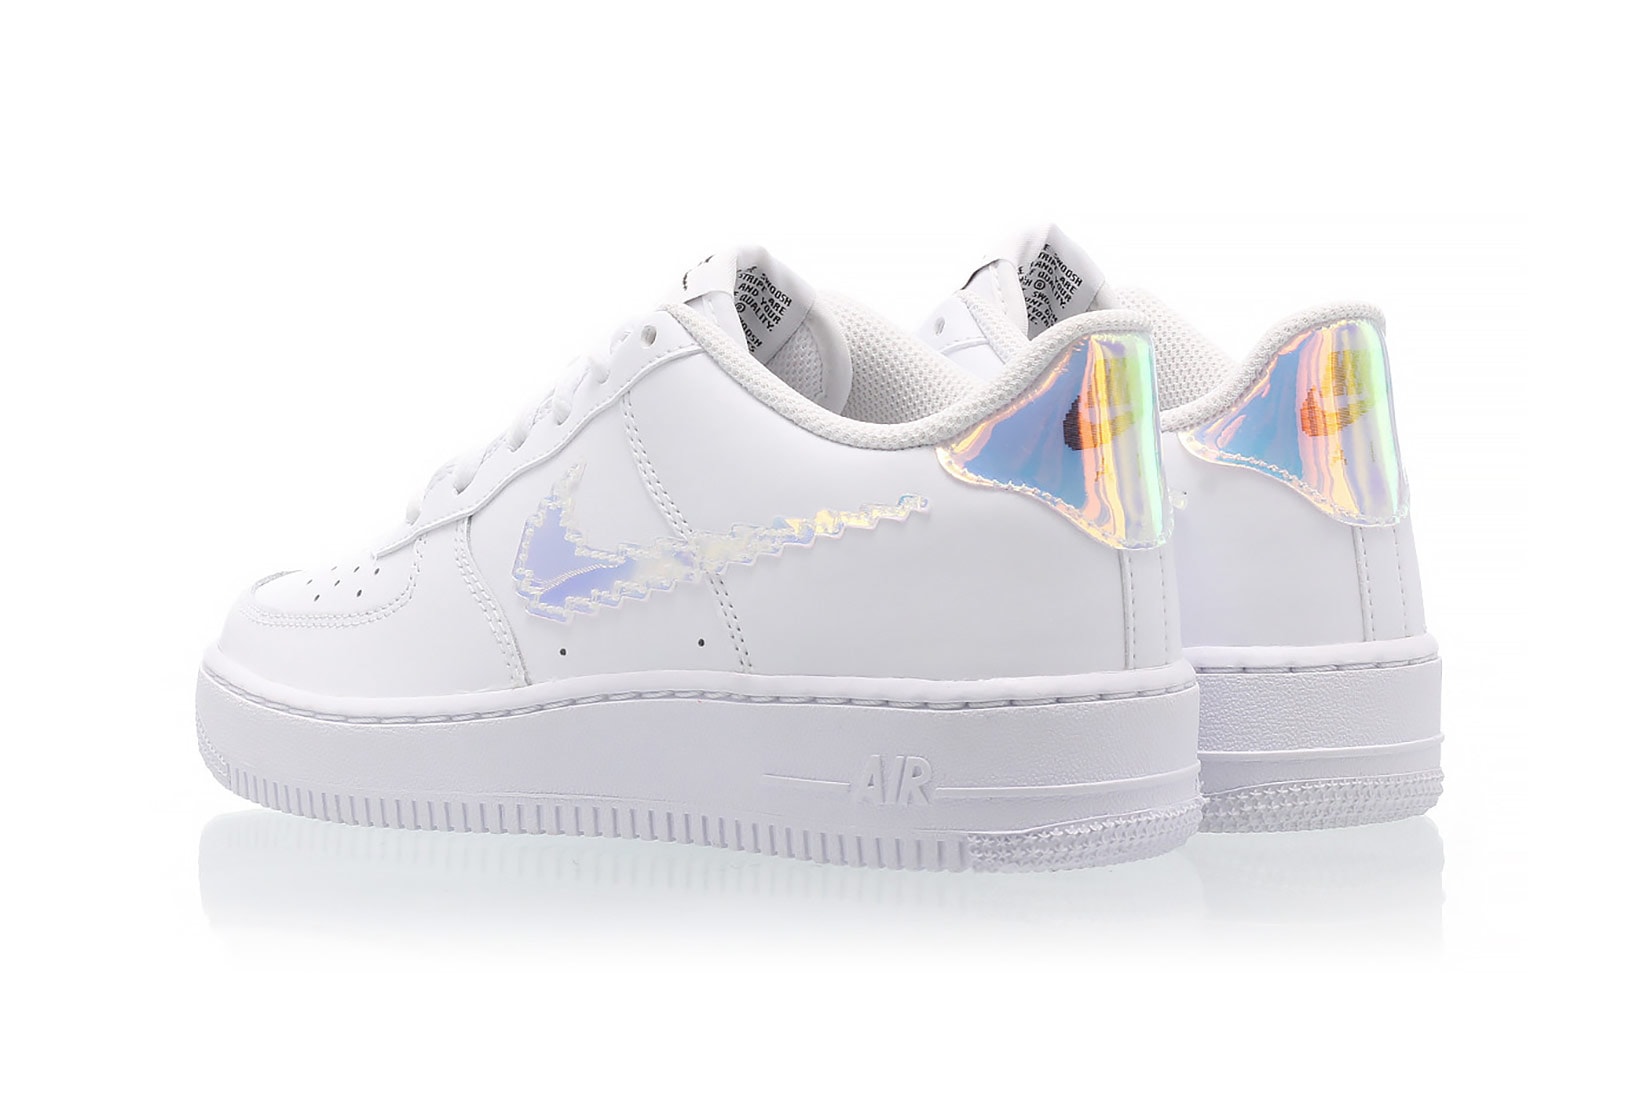 nike air force 1 af1 lv8 sneakers digital iridescent swoosh white colorway footwear shoes heel